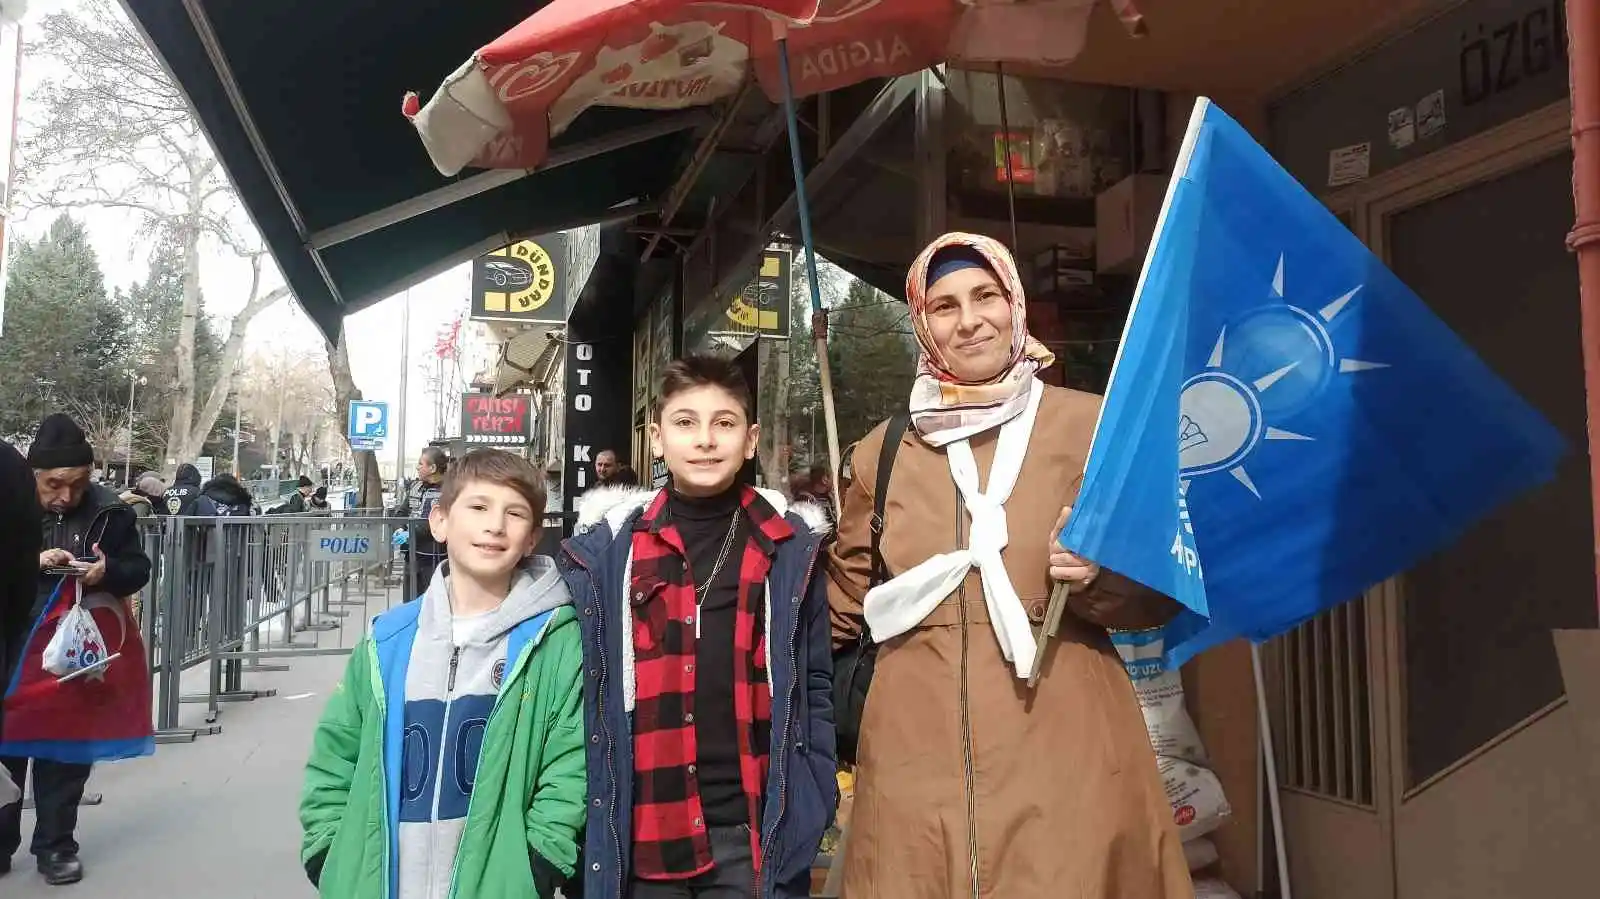 Bilecik'te Erdoğan'ı bekleyen minik çocuğun heyecanı
